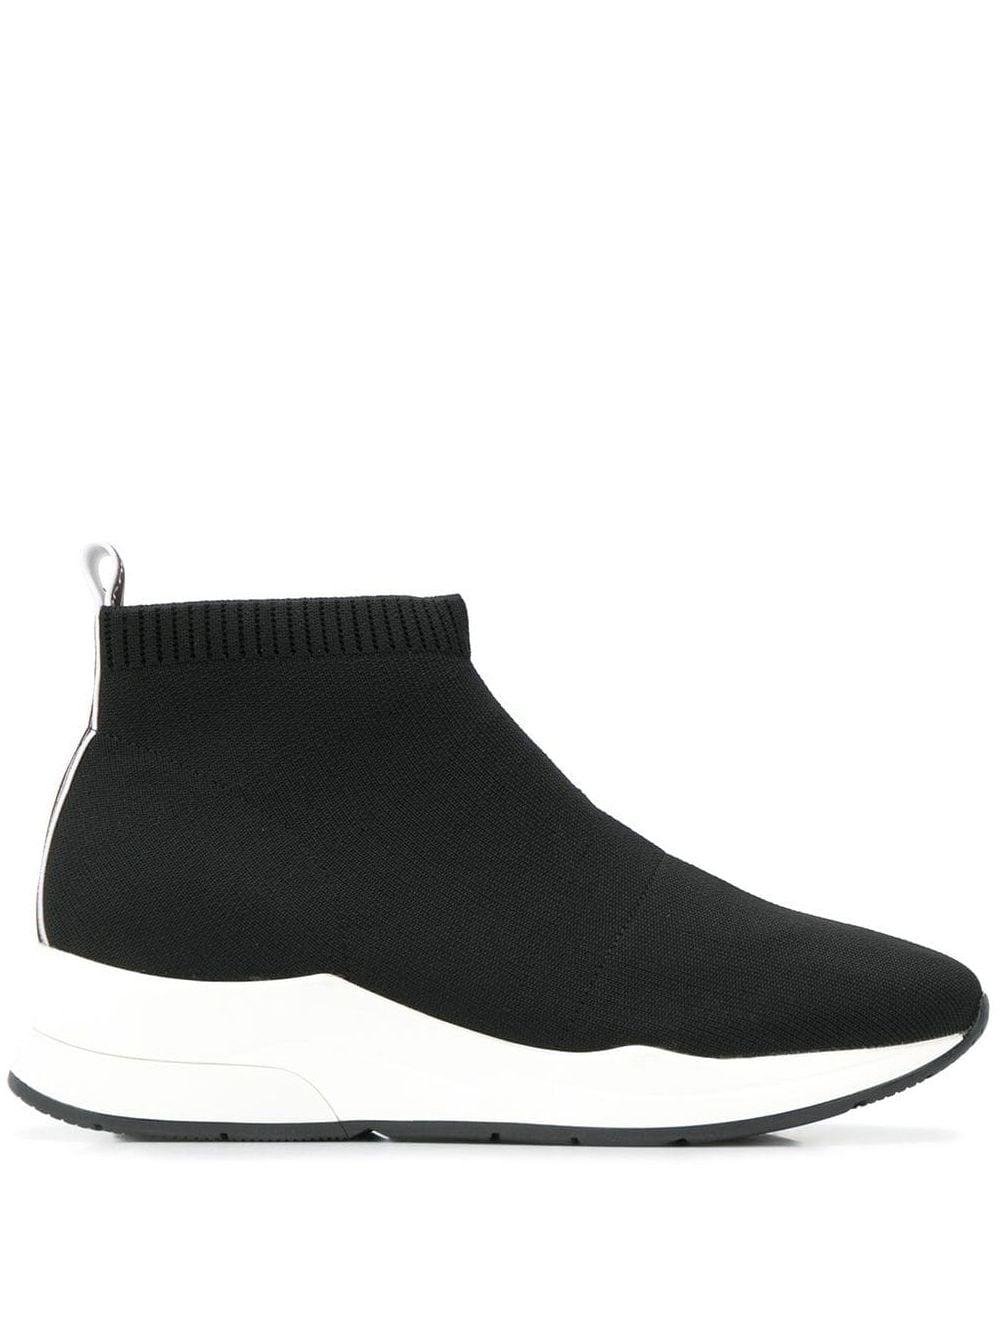 Liu Jo Knit Style Sock Sneakers in Black - Lyst